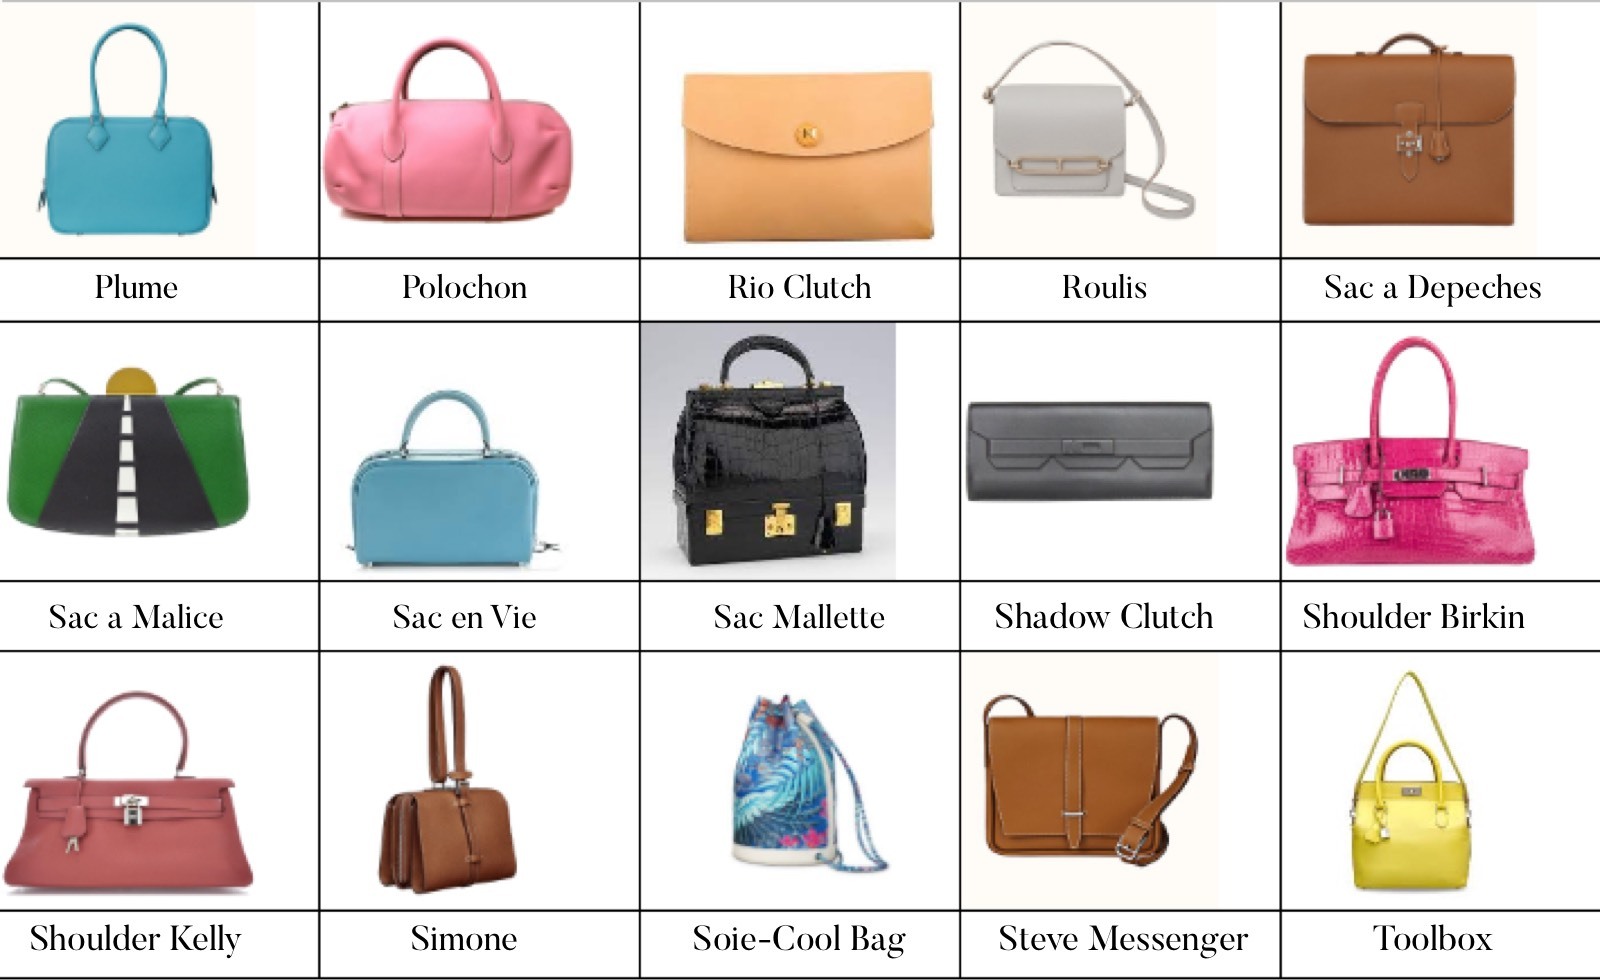 Название моделей сумок. Модели сумок и их названия. Формы сумок женских. Модели сумок названия. Типы женских сумок.